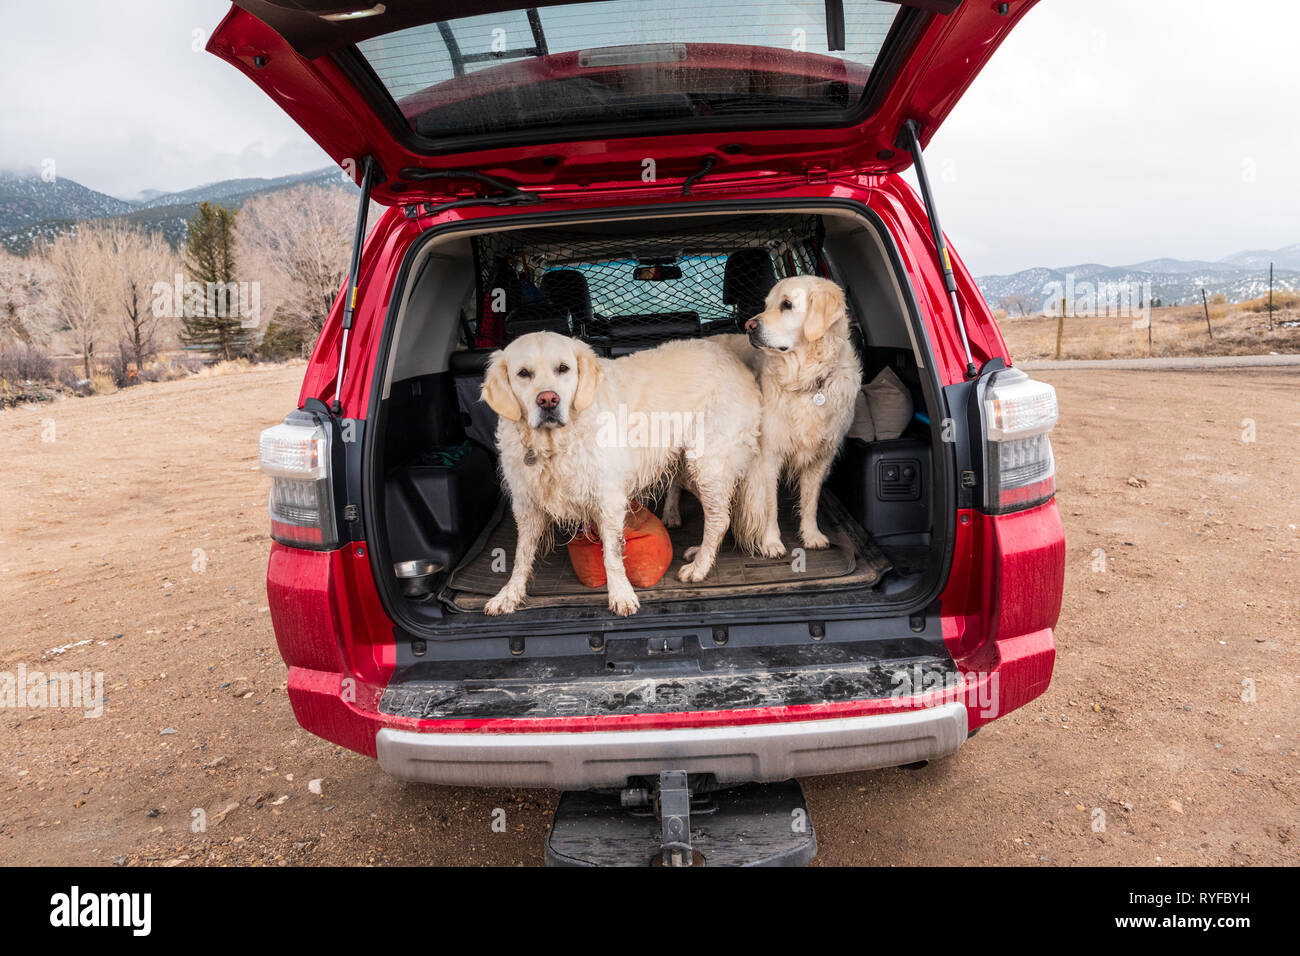 Deux chiens Golden Retriever de couleur platine à l'arrière d'un camion VUS Toyota 4Runner ; centre du Colorado, USA Banque D'Images